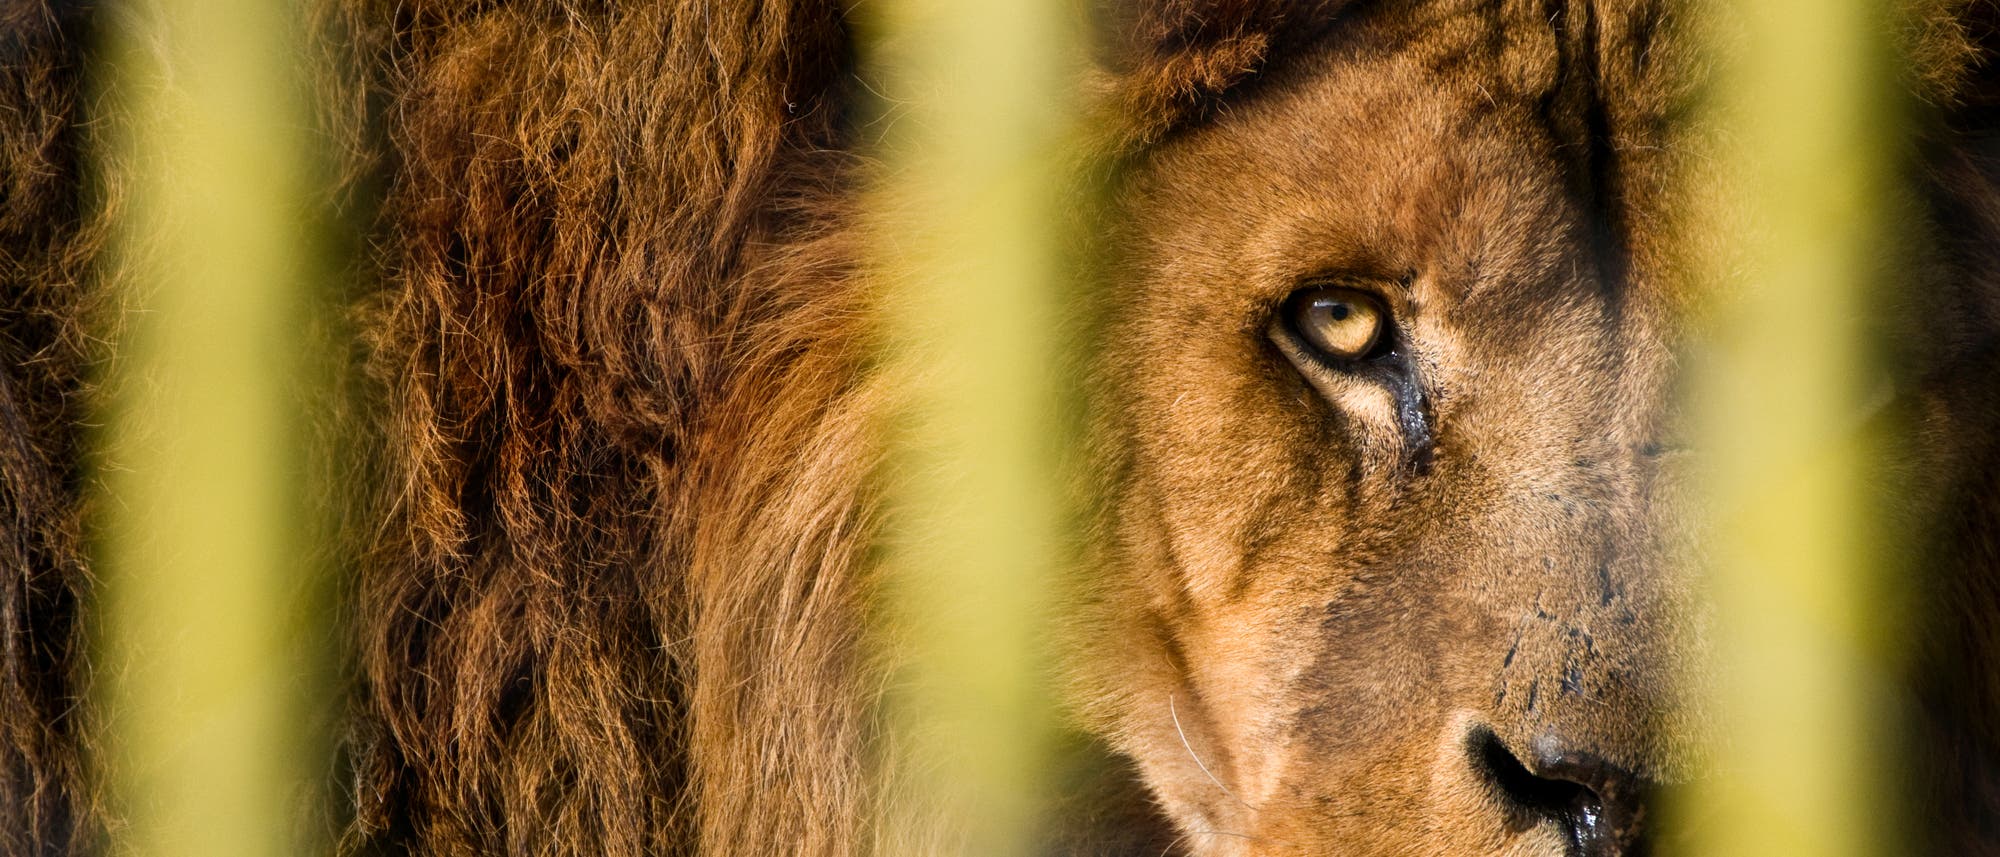 Überleben Löwen bald nur noch im Zoo?